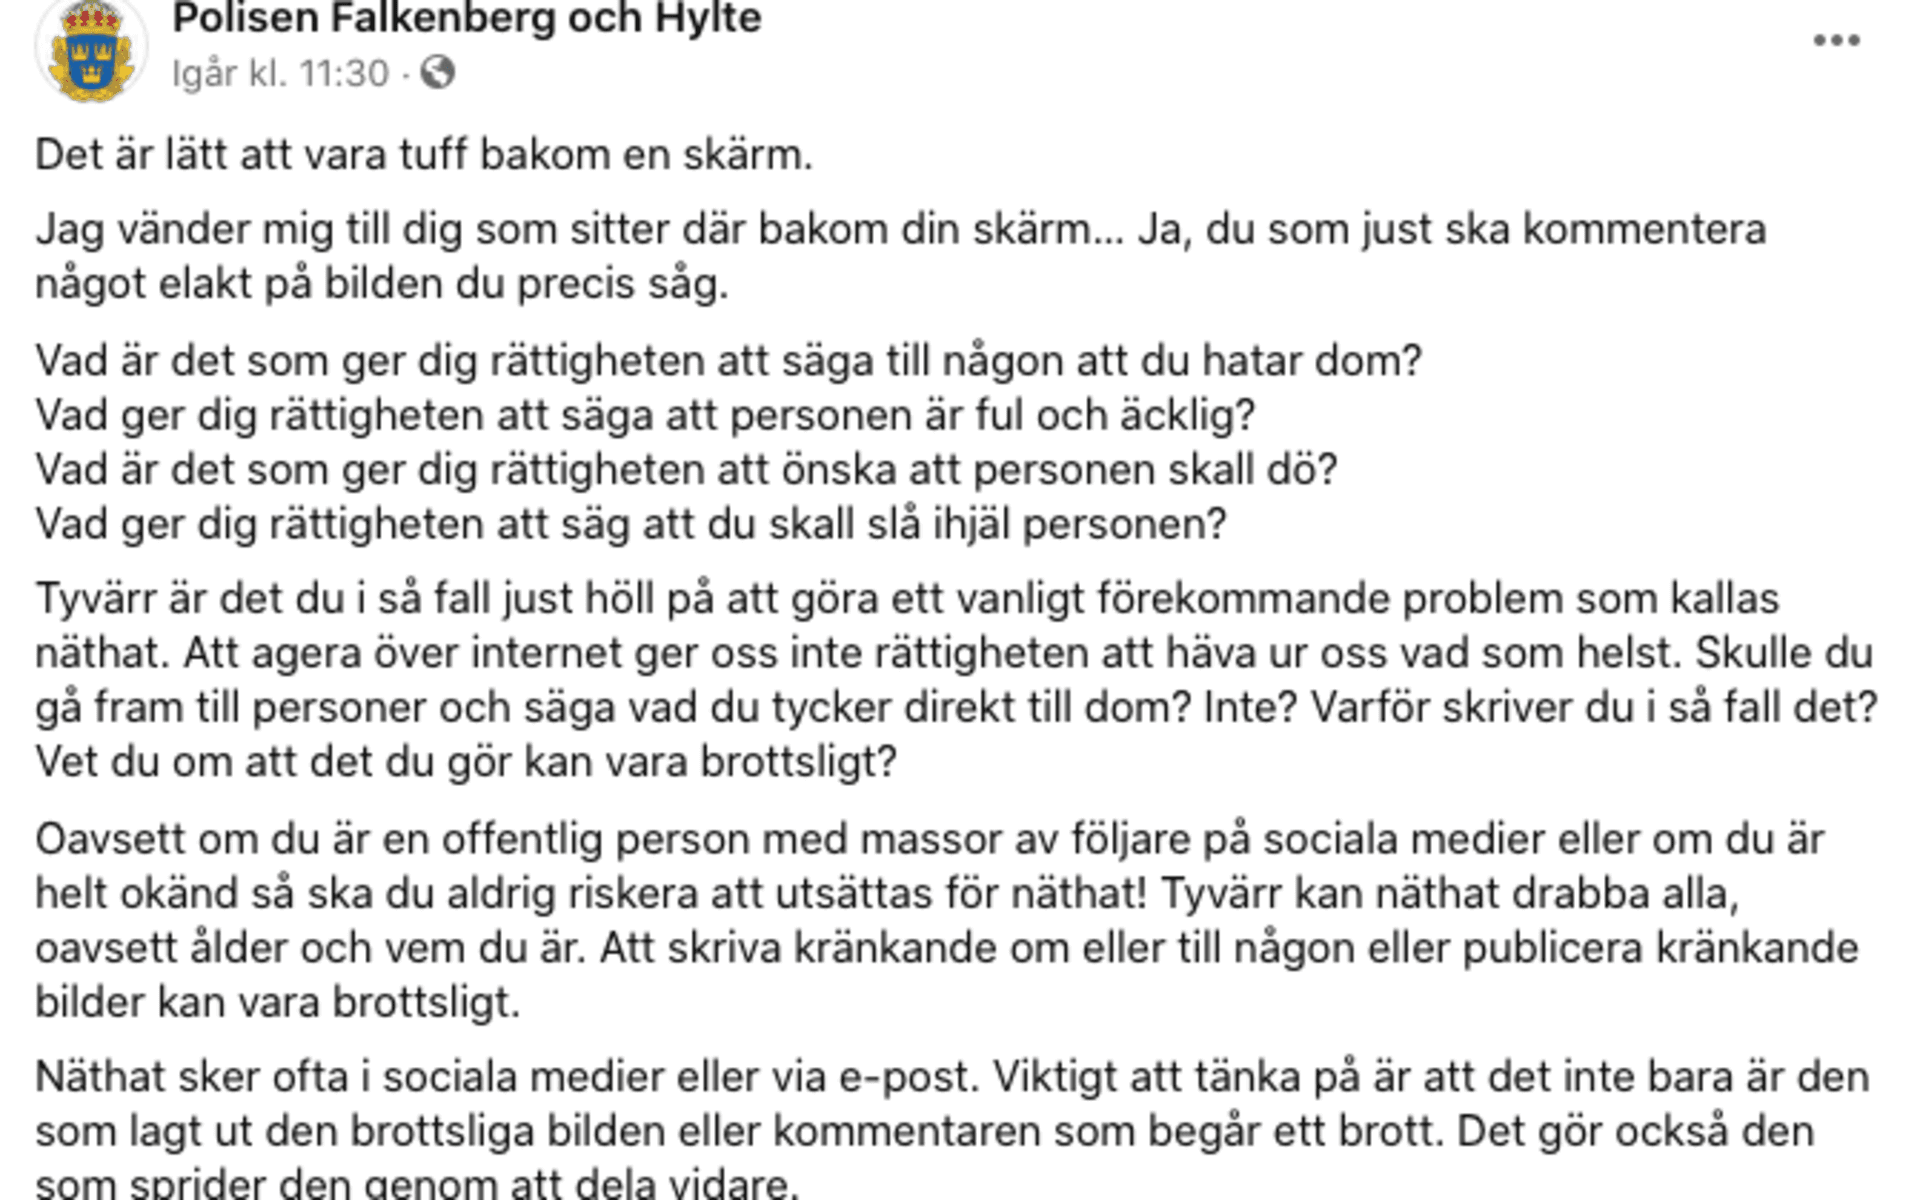 Anders Perssons senaste inlägg på polisens facebook i Falkenberg.